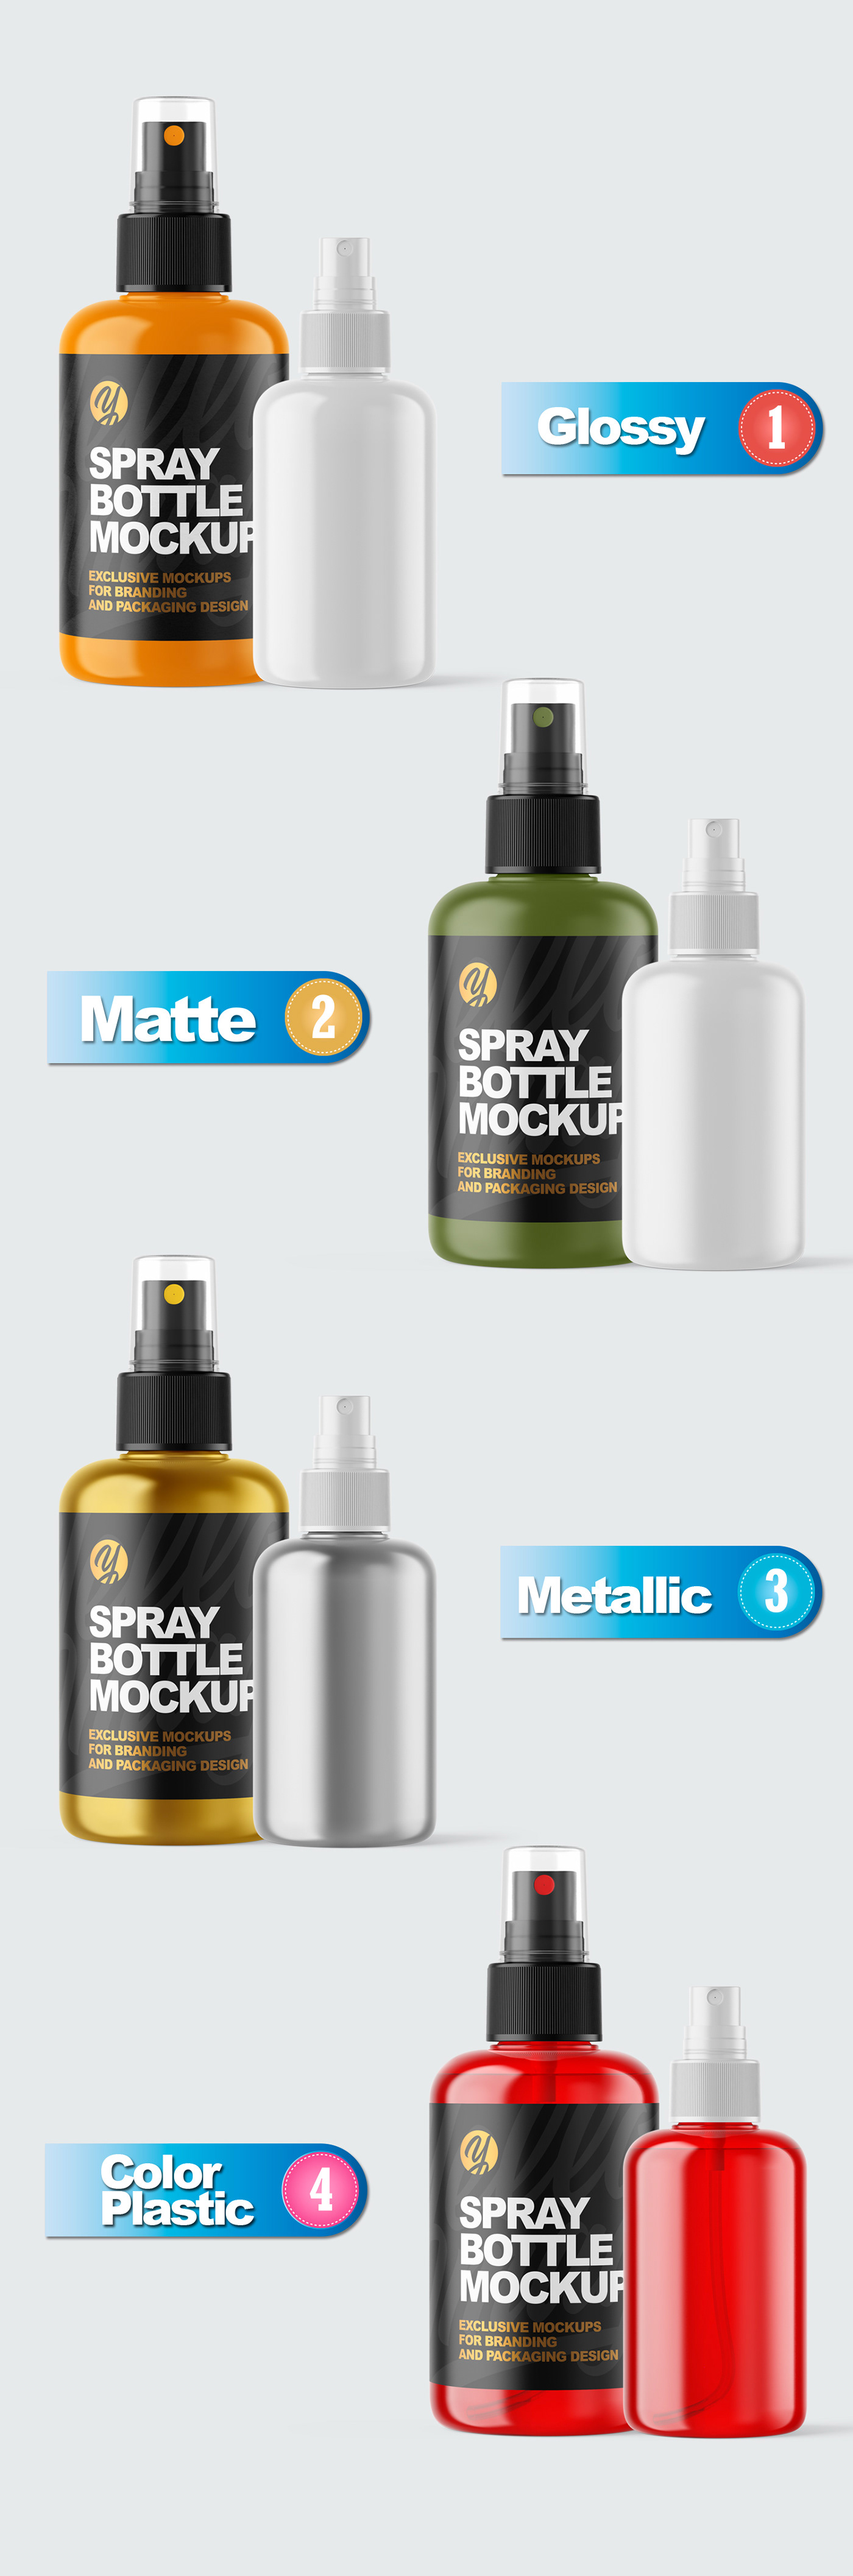 Download Plastic Spray Bottles Mockups On Behance